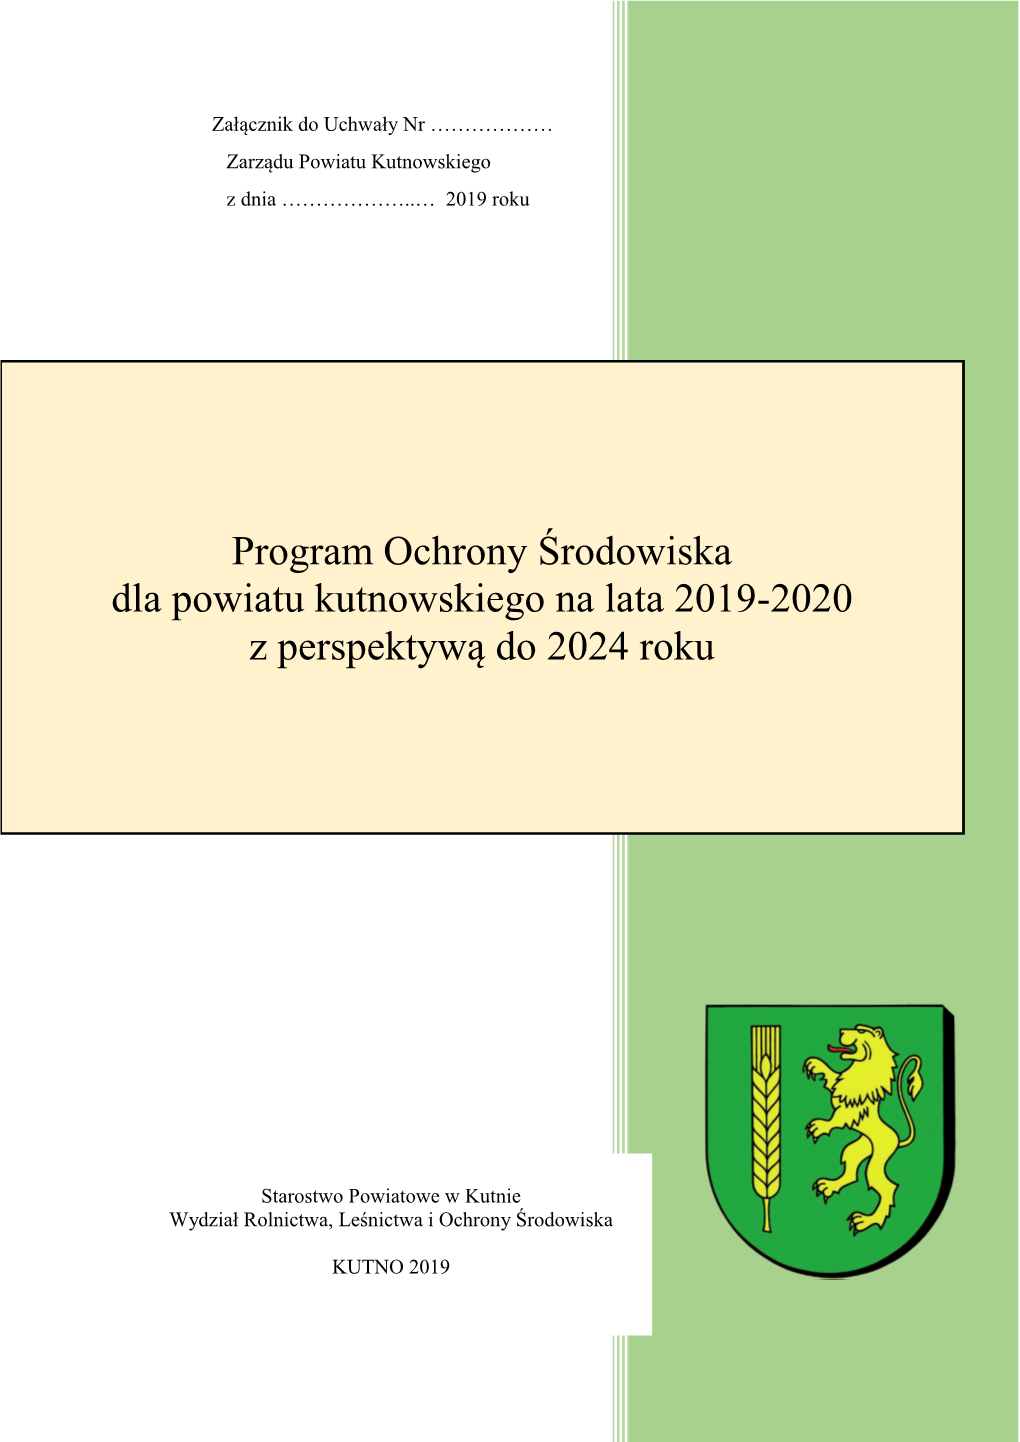 Program Ochrony Środowiska Dla Powiatu Kutnowskiego Na Lata 2019-2020 Z Perspektywą Do 2024 Roku